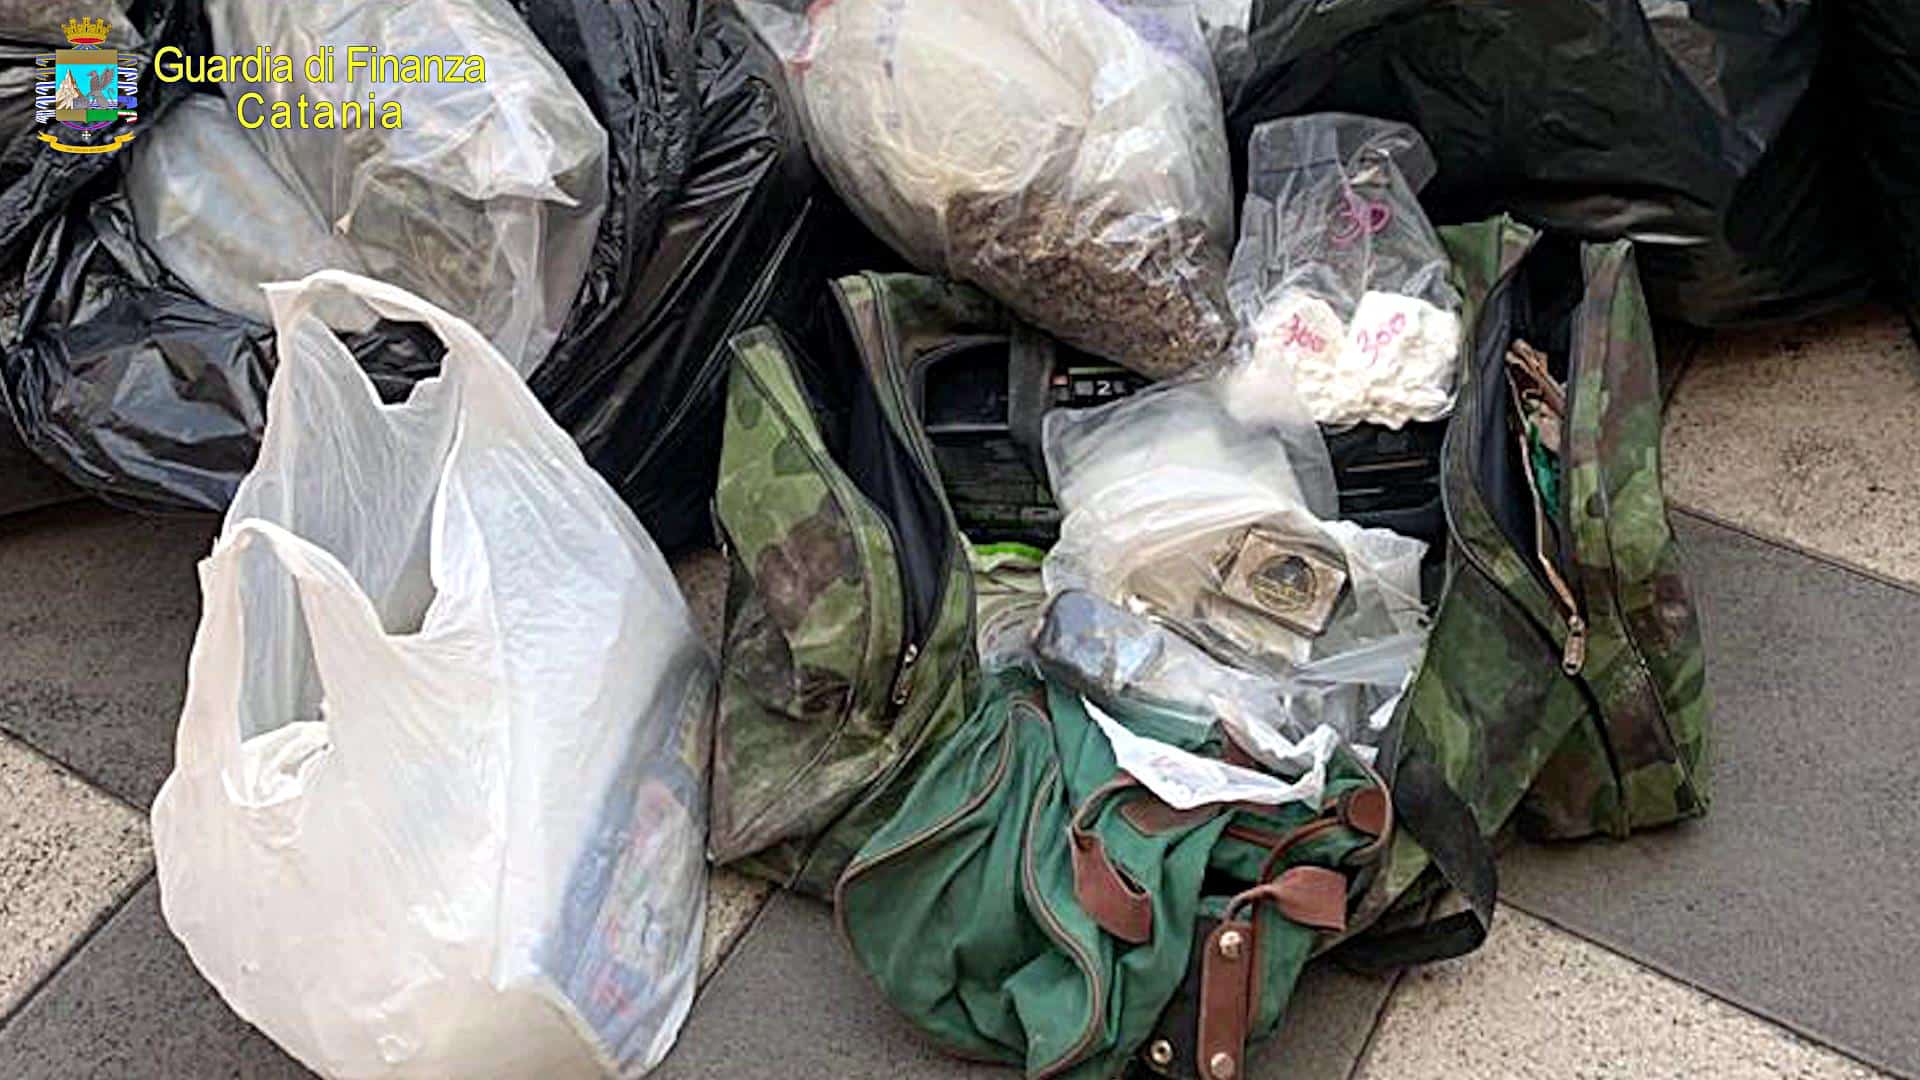 Maxi centrale di droga in un cimitero del Catanese, sequestrati oltre 70 Kg. tra marijuana, hashish e cocaina: arrestati due uomini